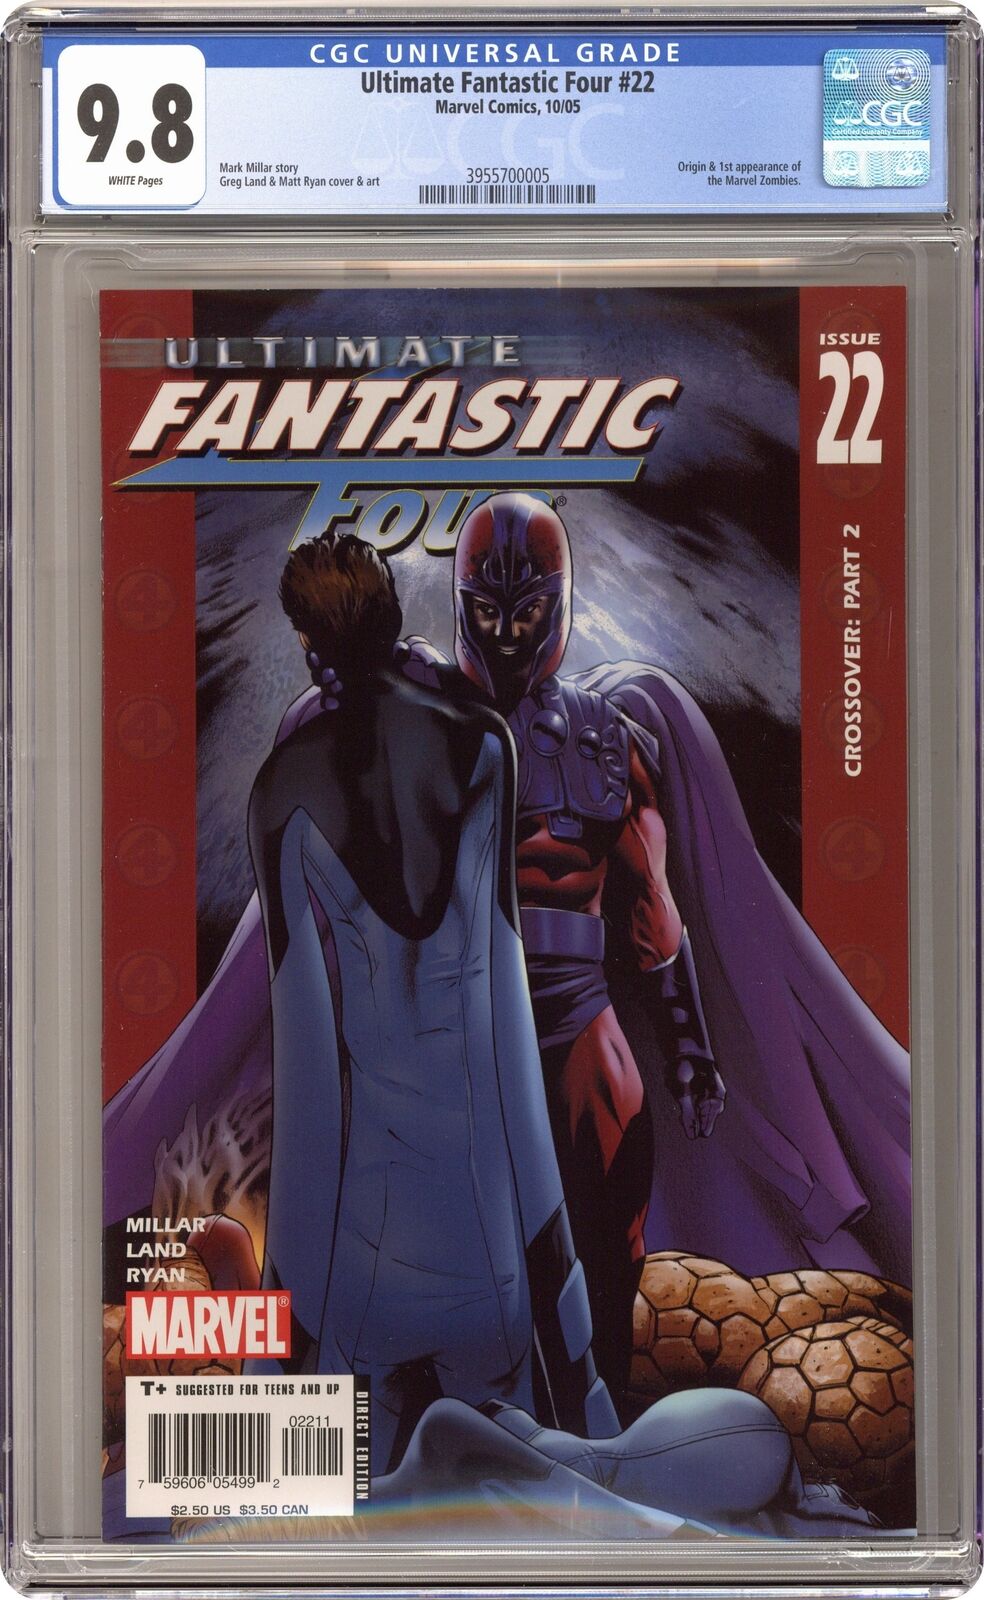 Ultimate Fantastic Four #22 CGC 9.8 2005 3955700005